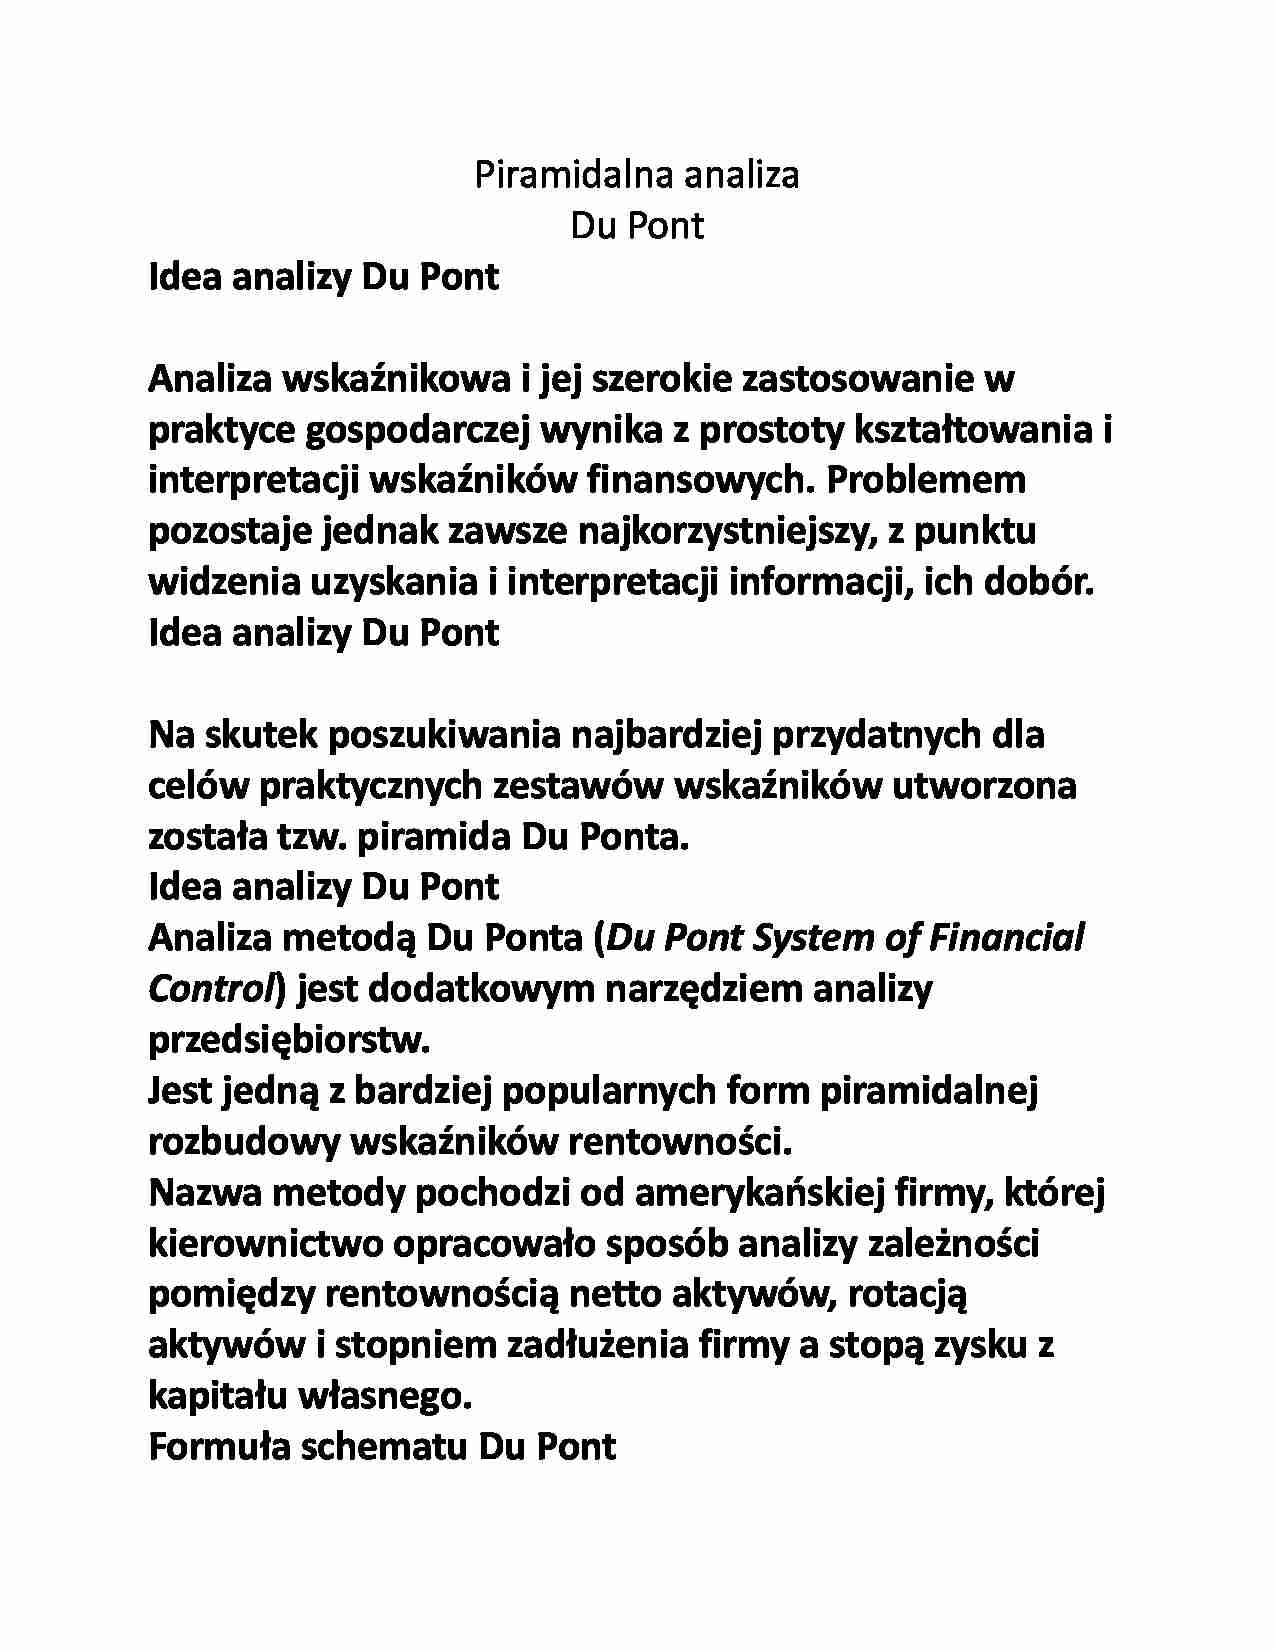 Idea analizy Du Pont - strona 1